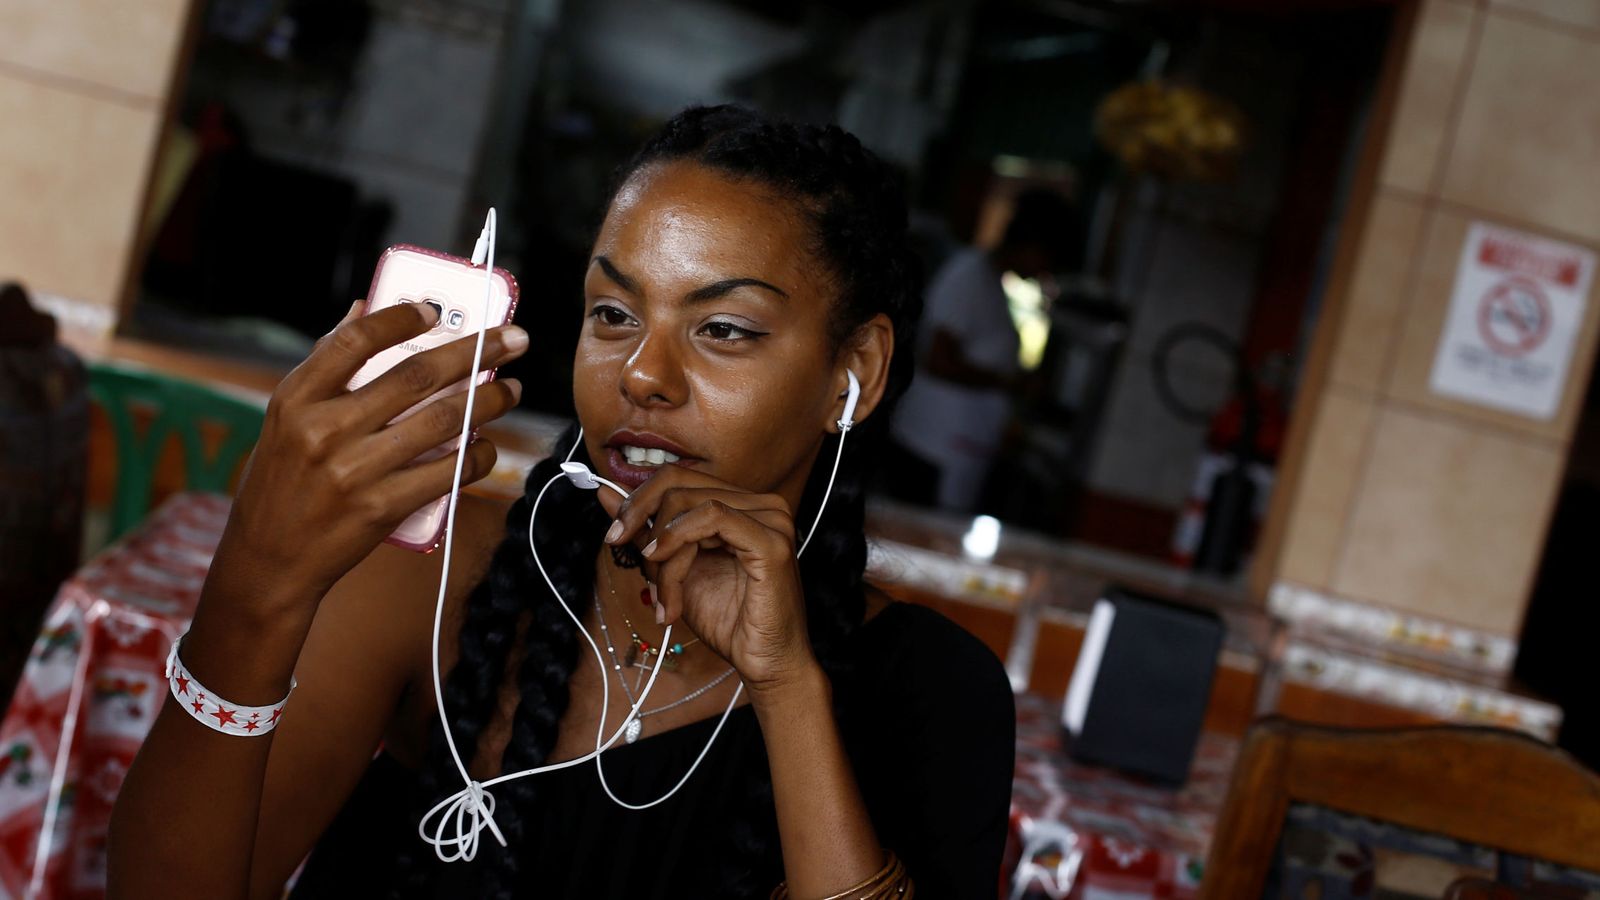 Foto: Cuba registró el mayor crecimiento del mundo en el total de usuarios de redes sociales entre 2015 y 2016. (Reuters)